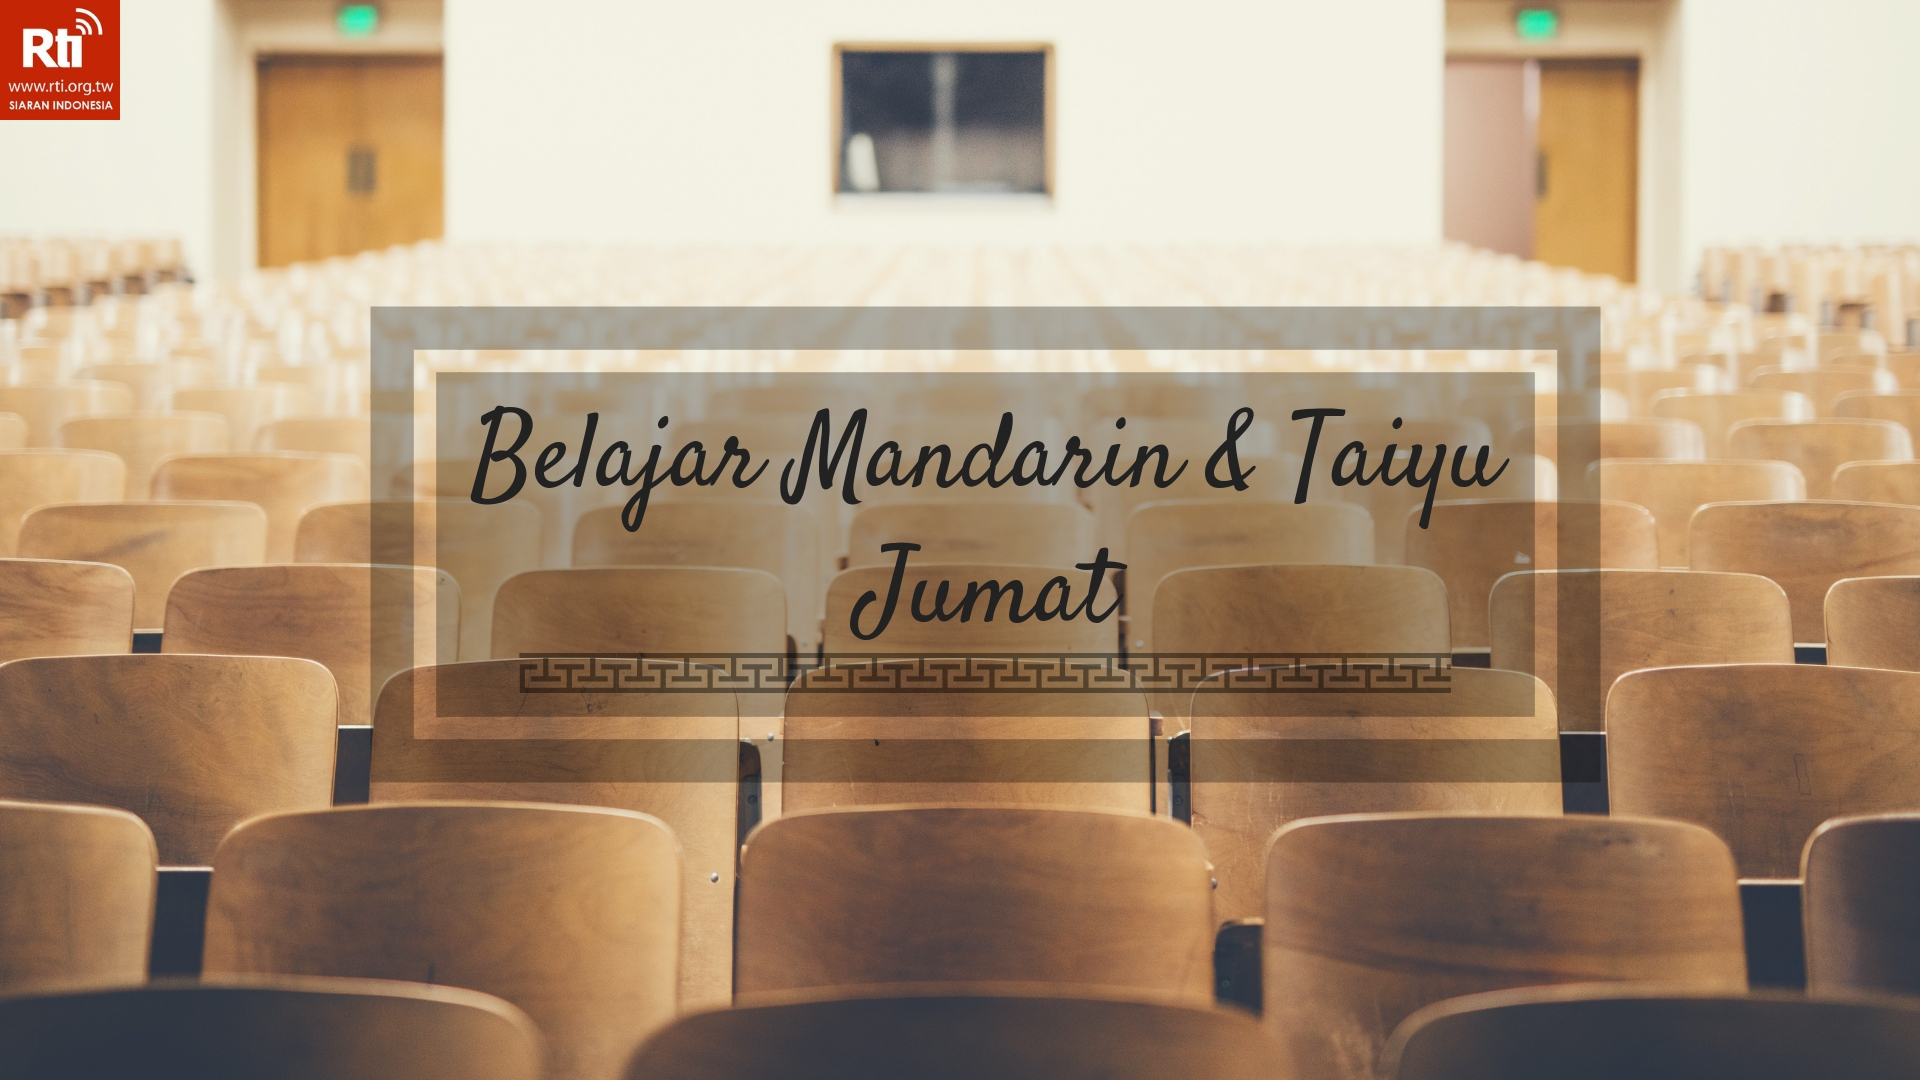 Belajar Mandarin, Taiyu dan Bahasa Indonesia 迷信Bertakhyul